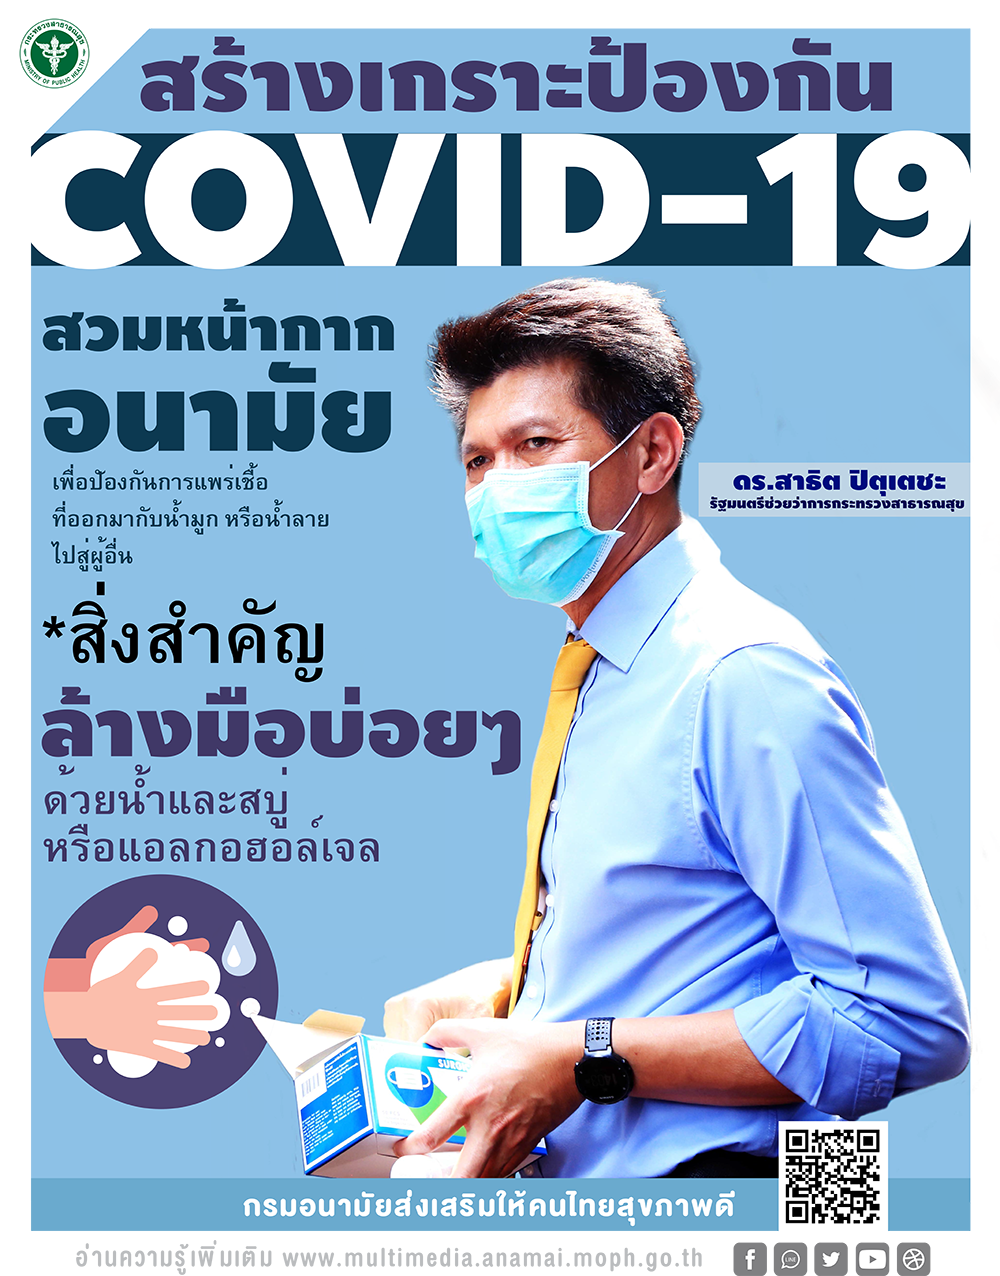 สร้างเกราะป้องกัน COVID-19 สวมหน้ากากอนามัย